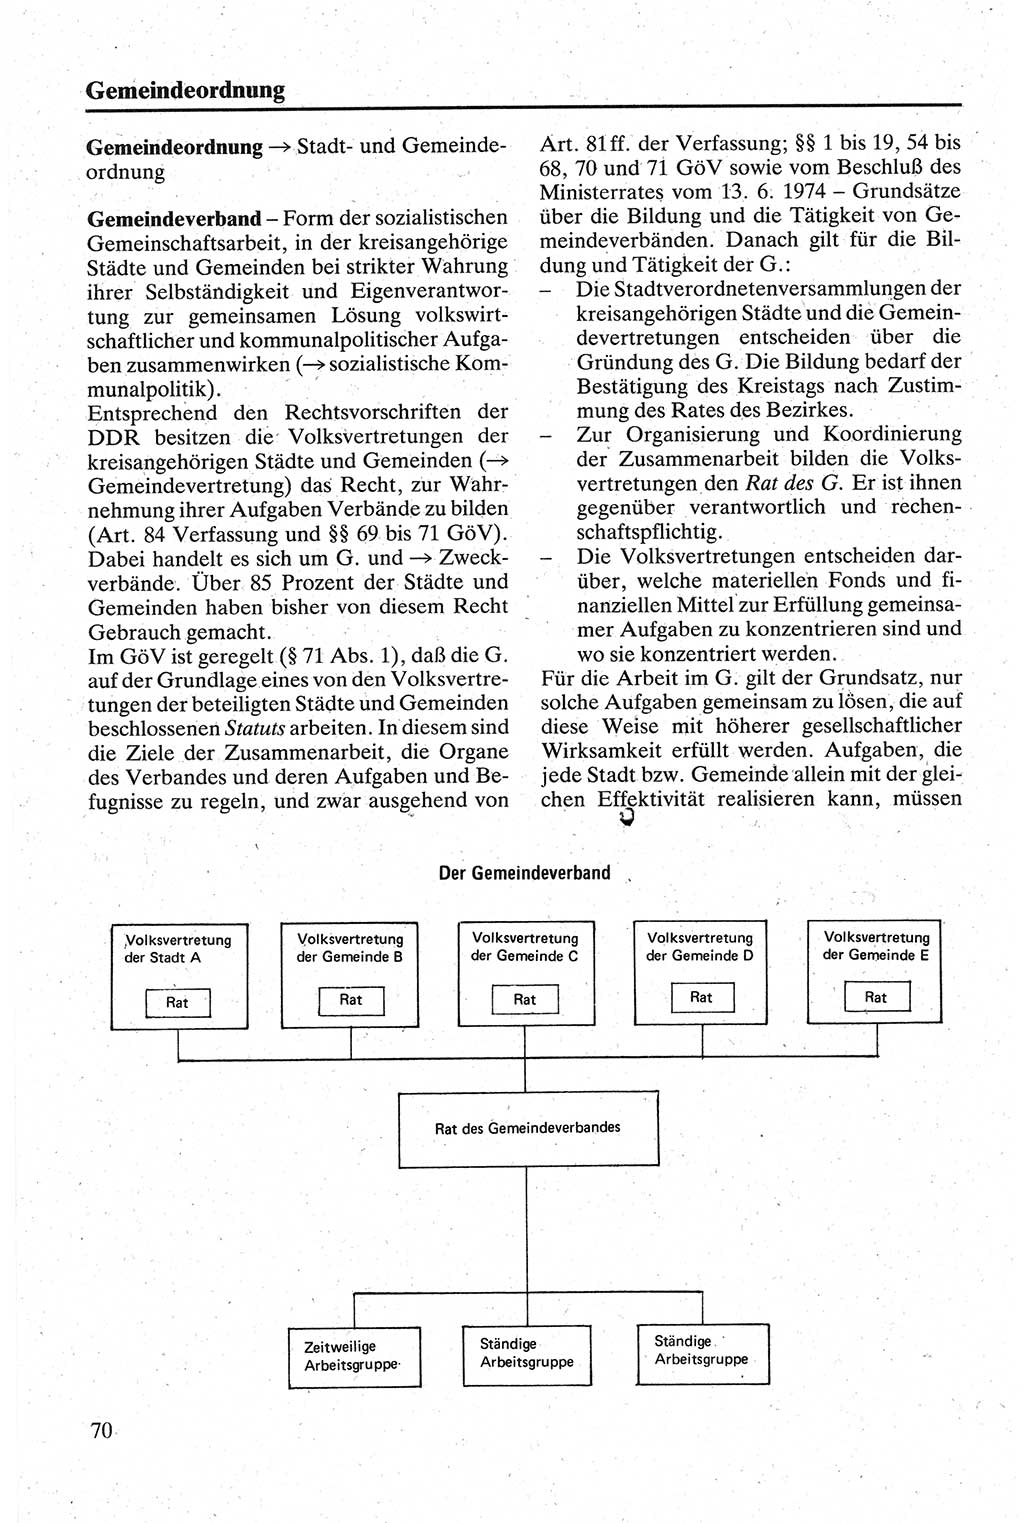 Handbuch für den Abgeordneten [Deutsche Demokratische Republik (DDR)] 1984, Seite 70 (Hb. Abg. DDR 1984, S. 70)